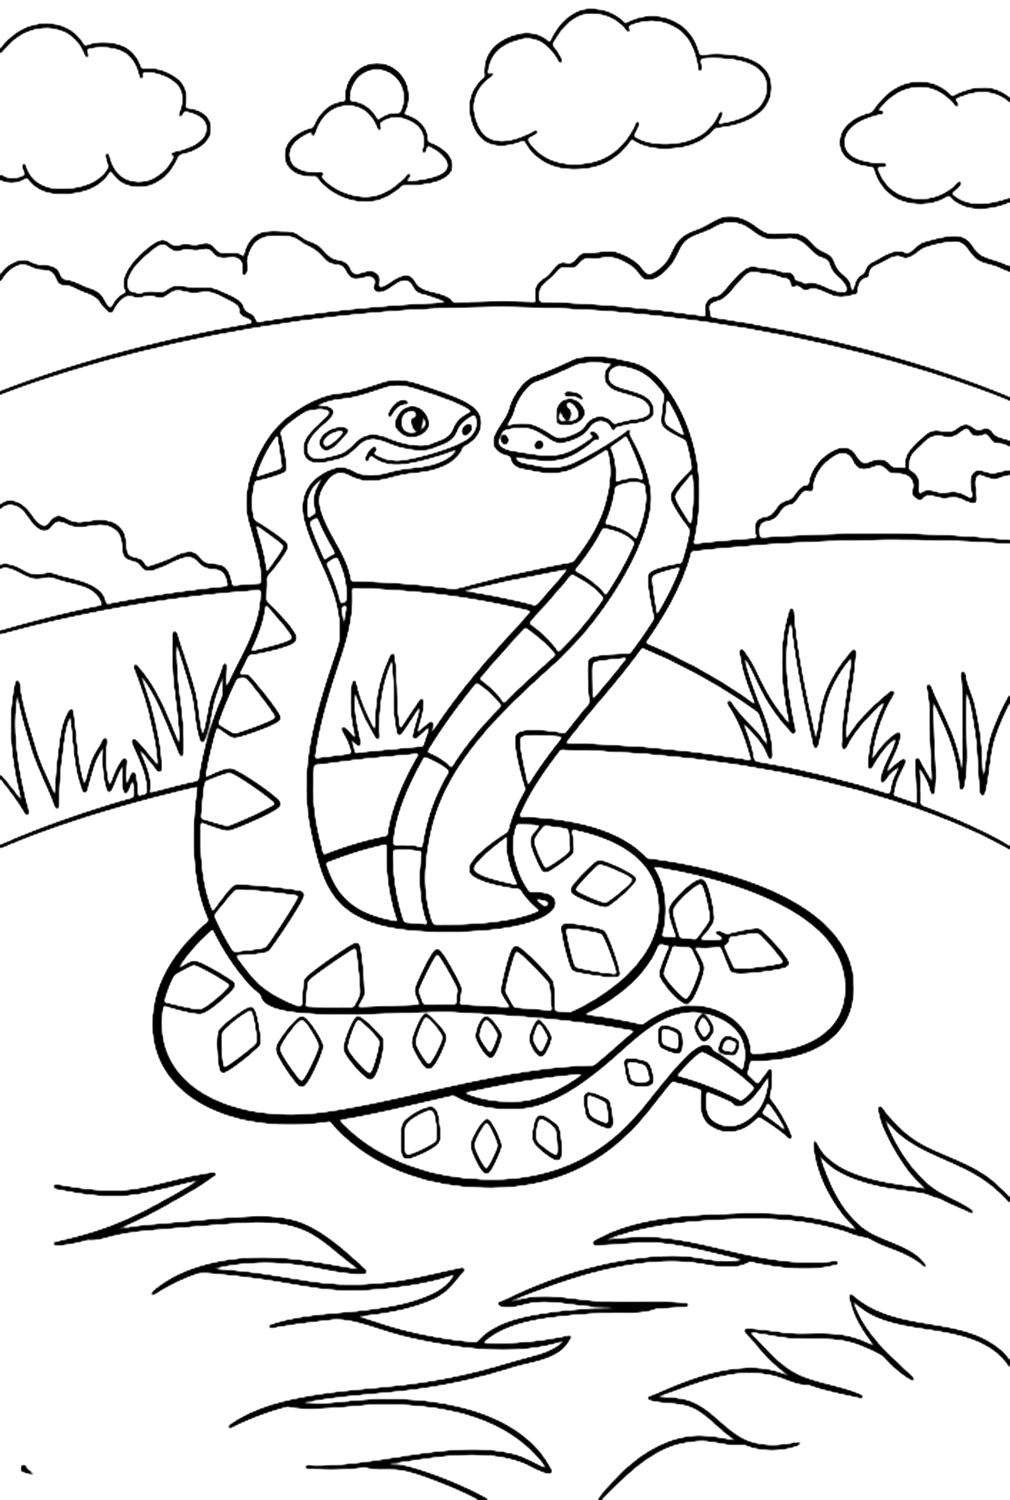 Imagen de Python para colorear desde Python